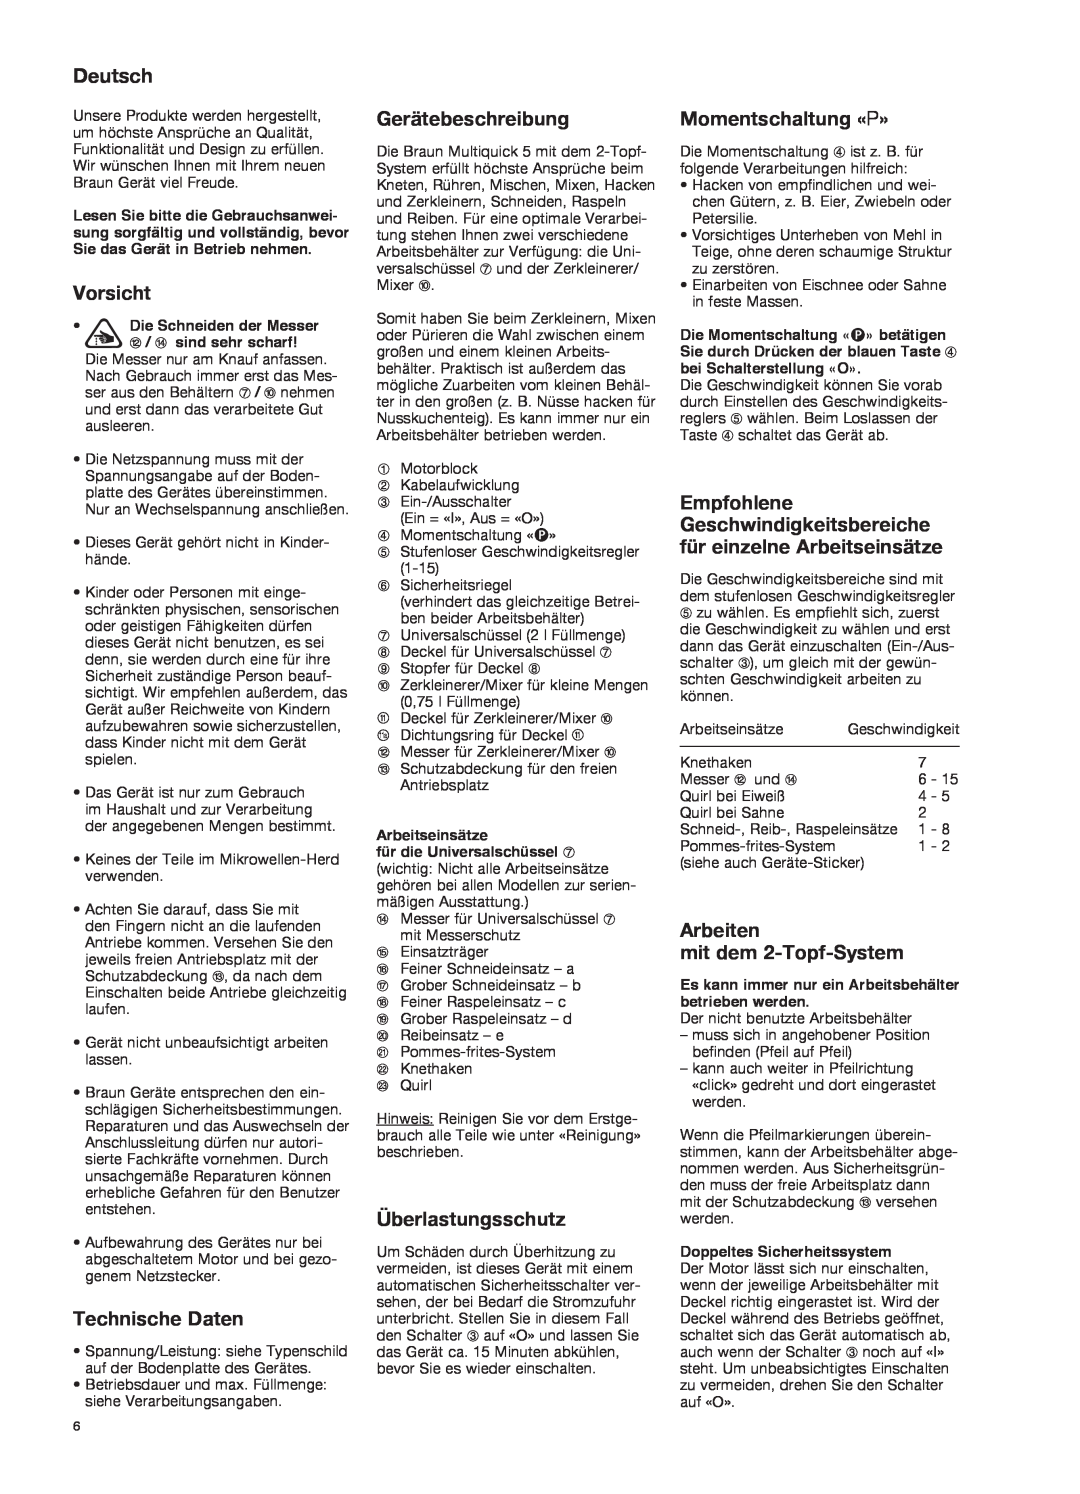 Braun K 700 black manual Deutsch, Vorsicht, Technische Daten, Gerätebeschreibung, Überlastungsschutz, Momentschaltung «P» 